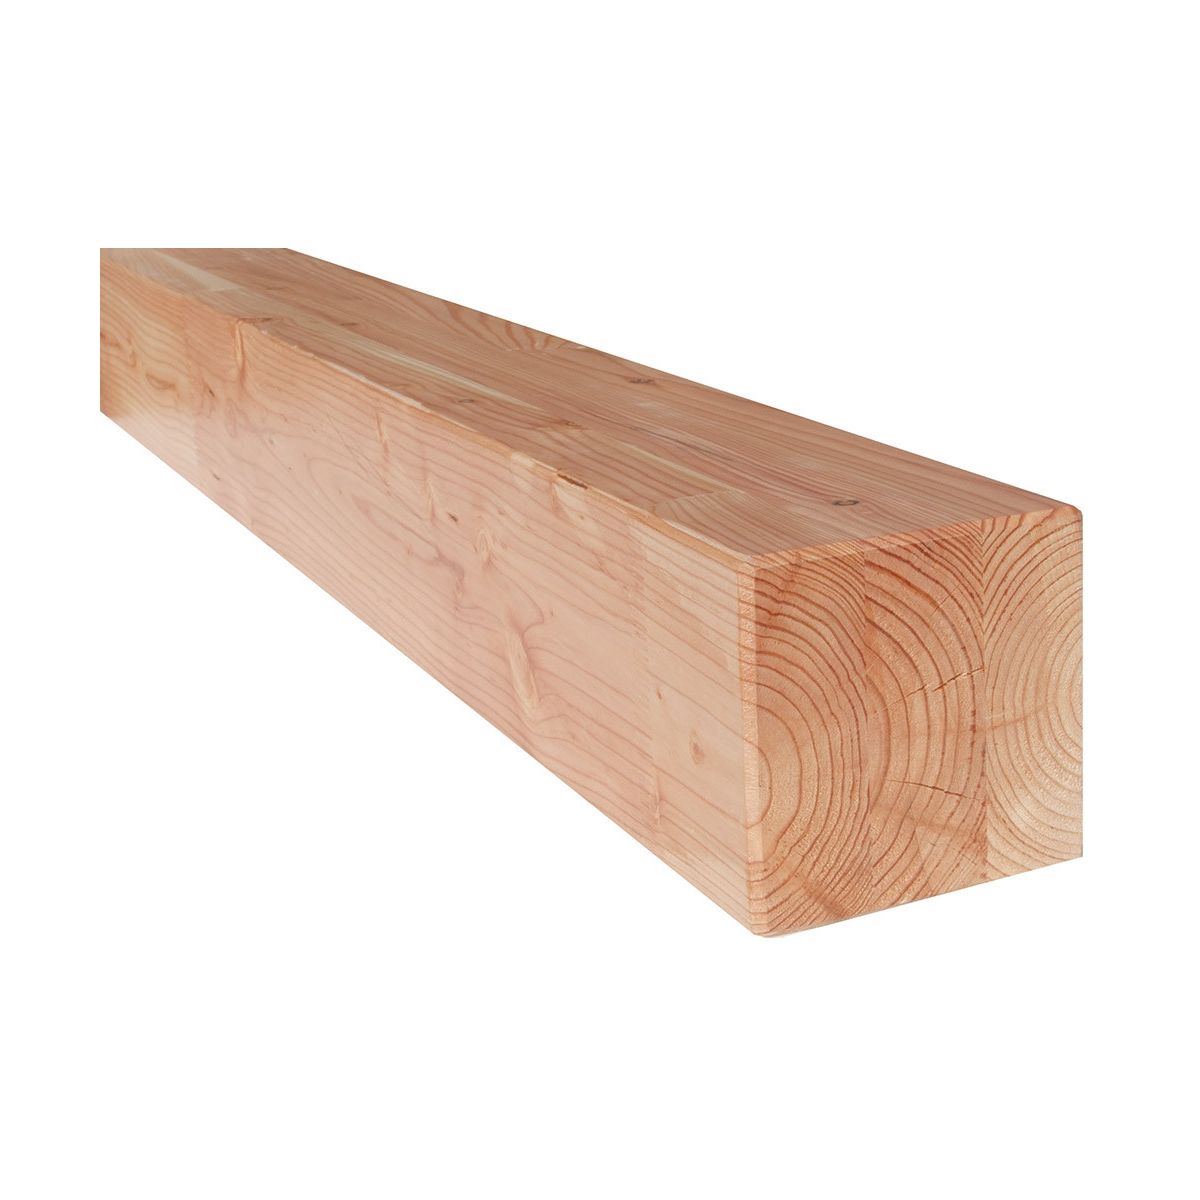 Poutre en bois épicéa - Section 15x15 - Longueur 6m